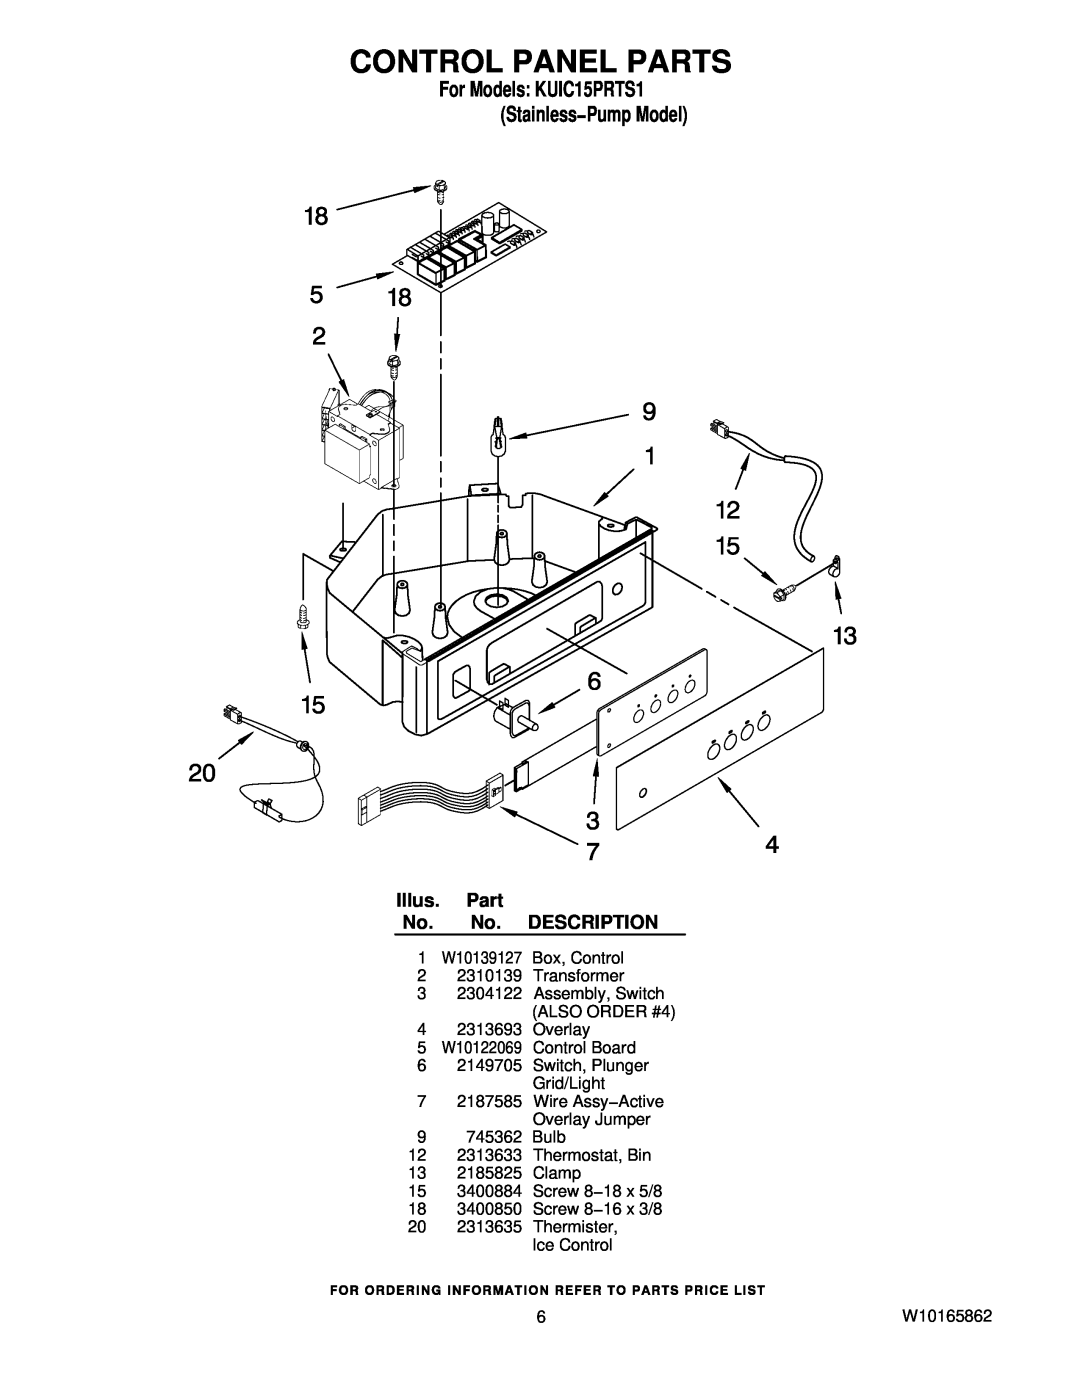 KitchenAid manual Control Panel Parts, For Models KUIC15PRTS1 Stainless−Pump Model, Illus. Part No. No. DESCRIPTION 